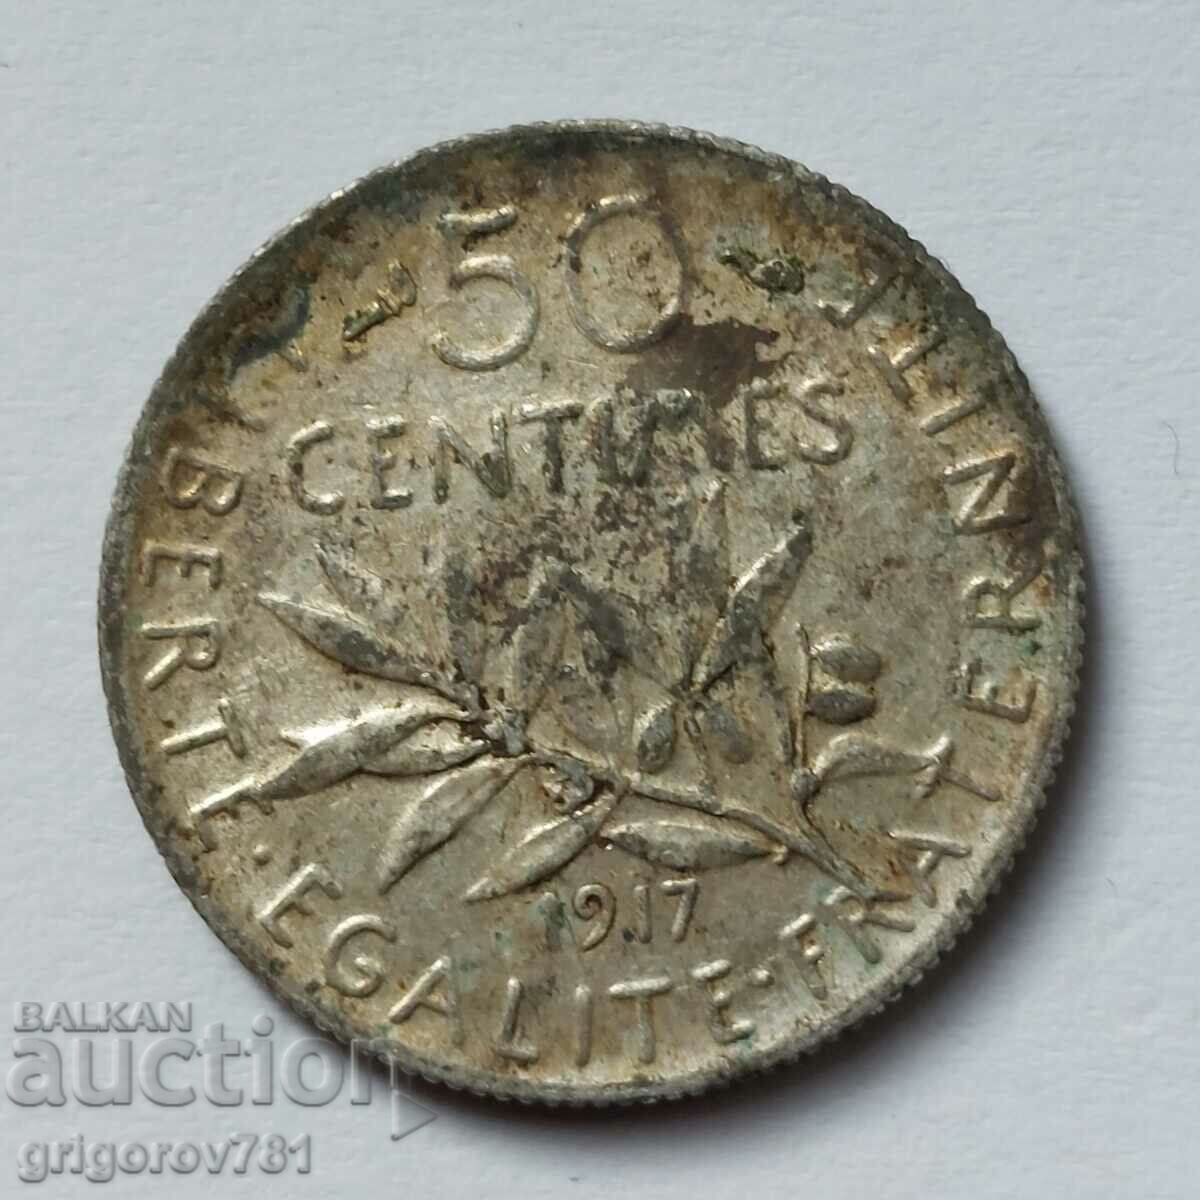 Ασημένιο 50 εκατοστά Γαλλία 1917 - ασημένιο νόμισμα №18